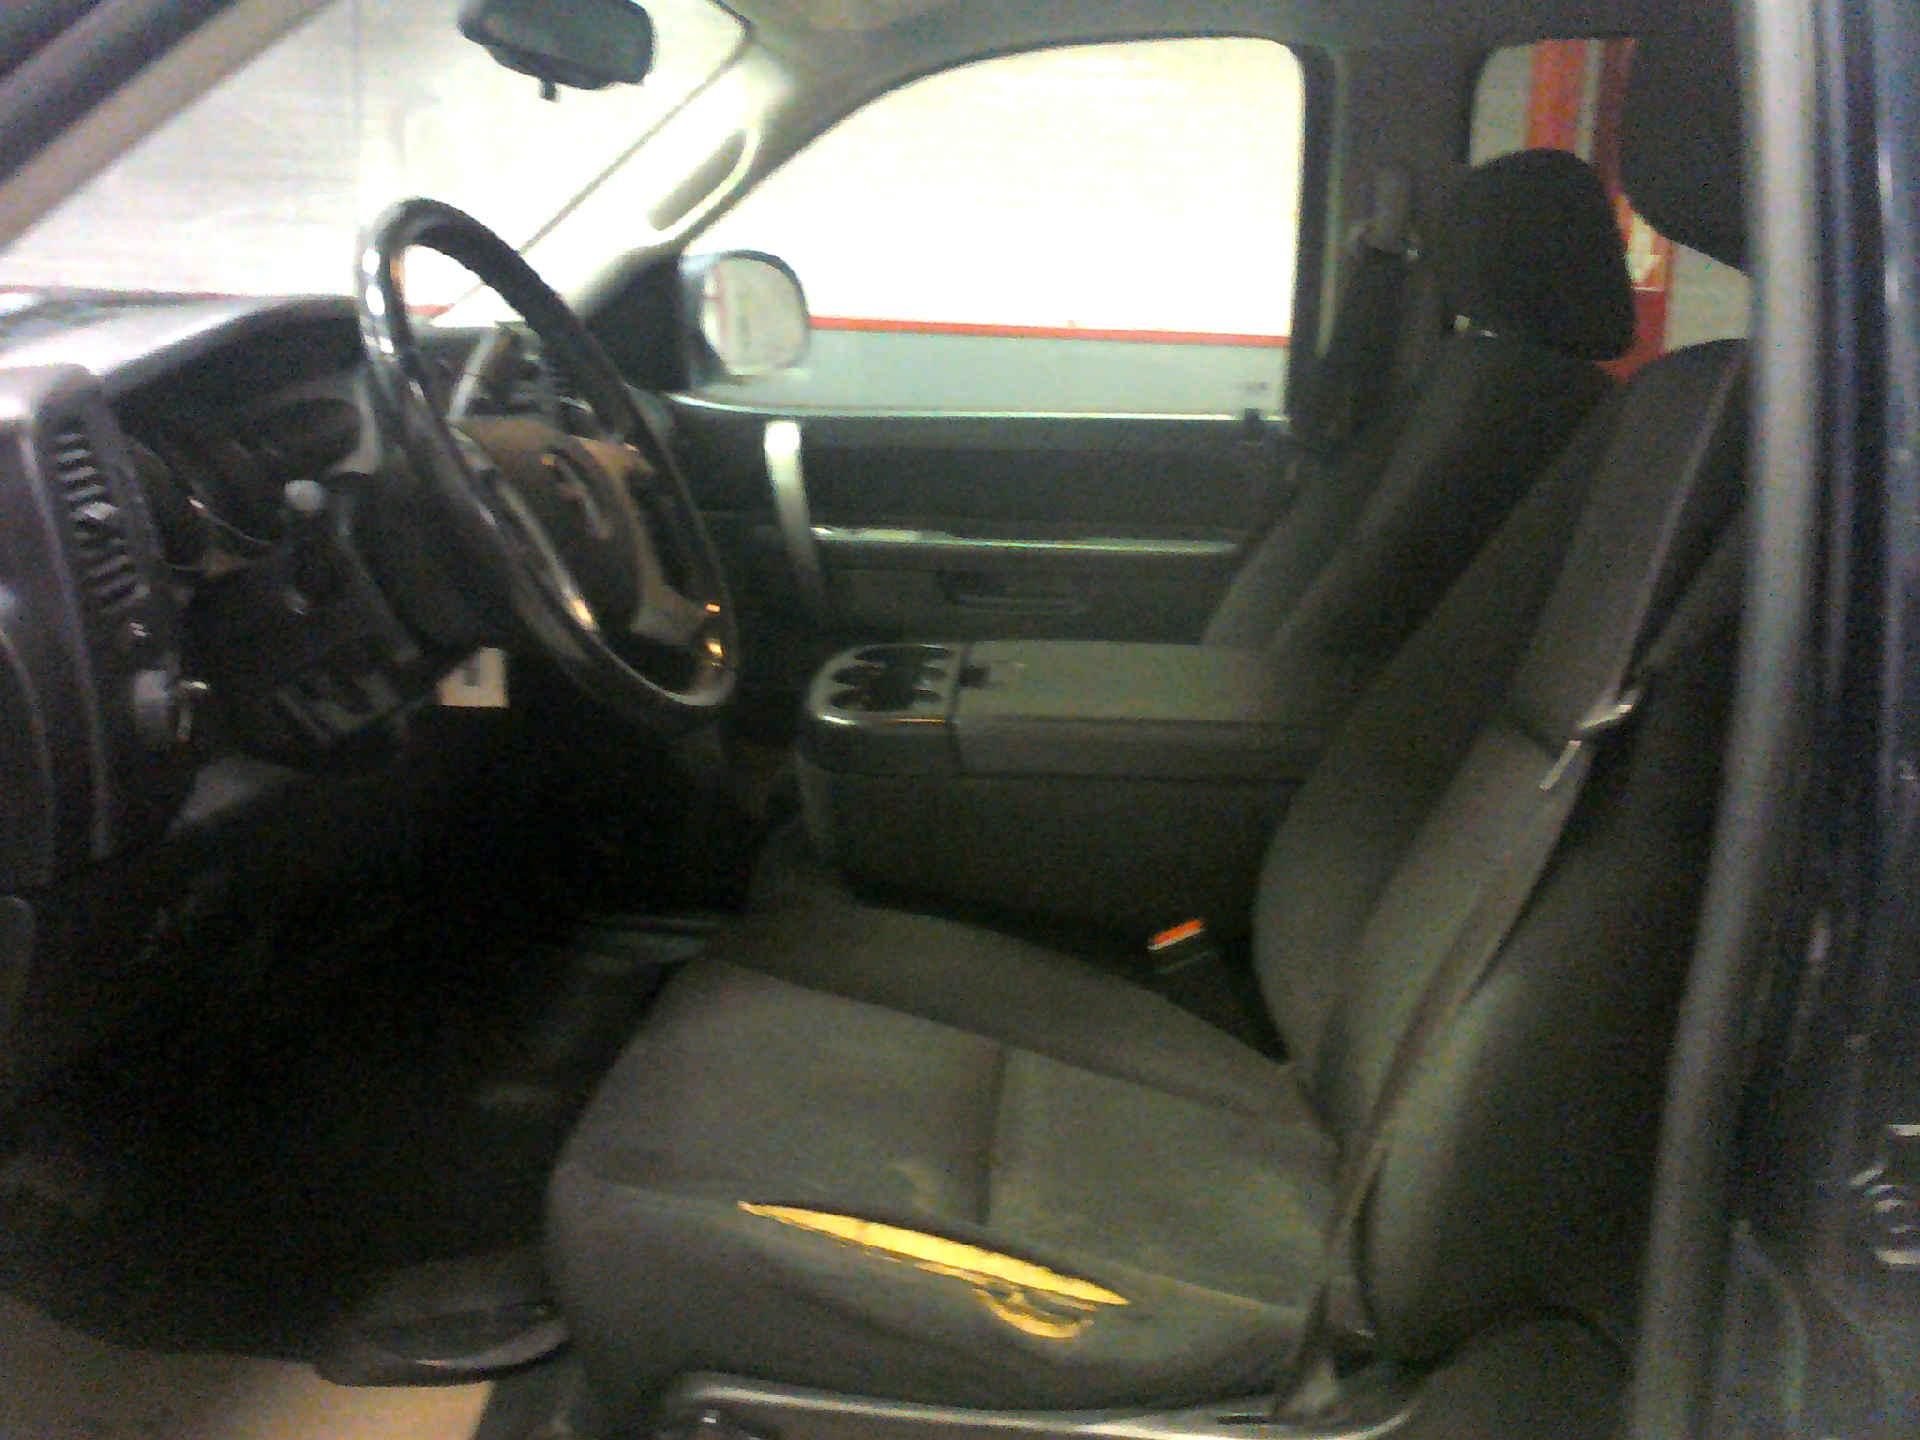 2012 GMC SIERRA 2500HD SLE CREW CAB 4WD 6.0L V8 OHV 16V FFV AUTOMATIC SN:1GT120CG4CF145969 OPTIONS: - Image 5 of 9